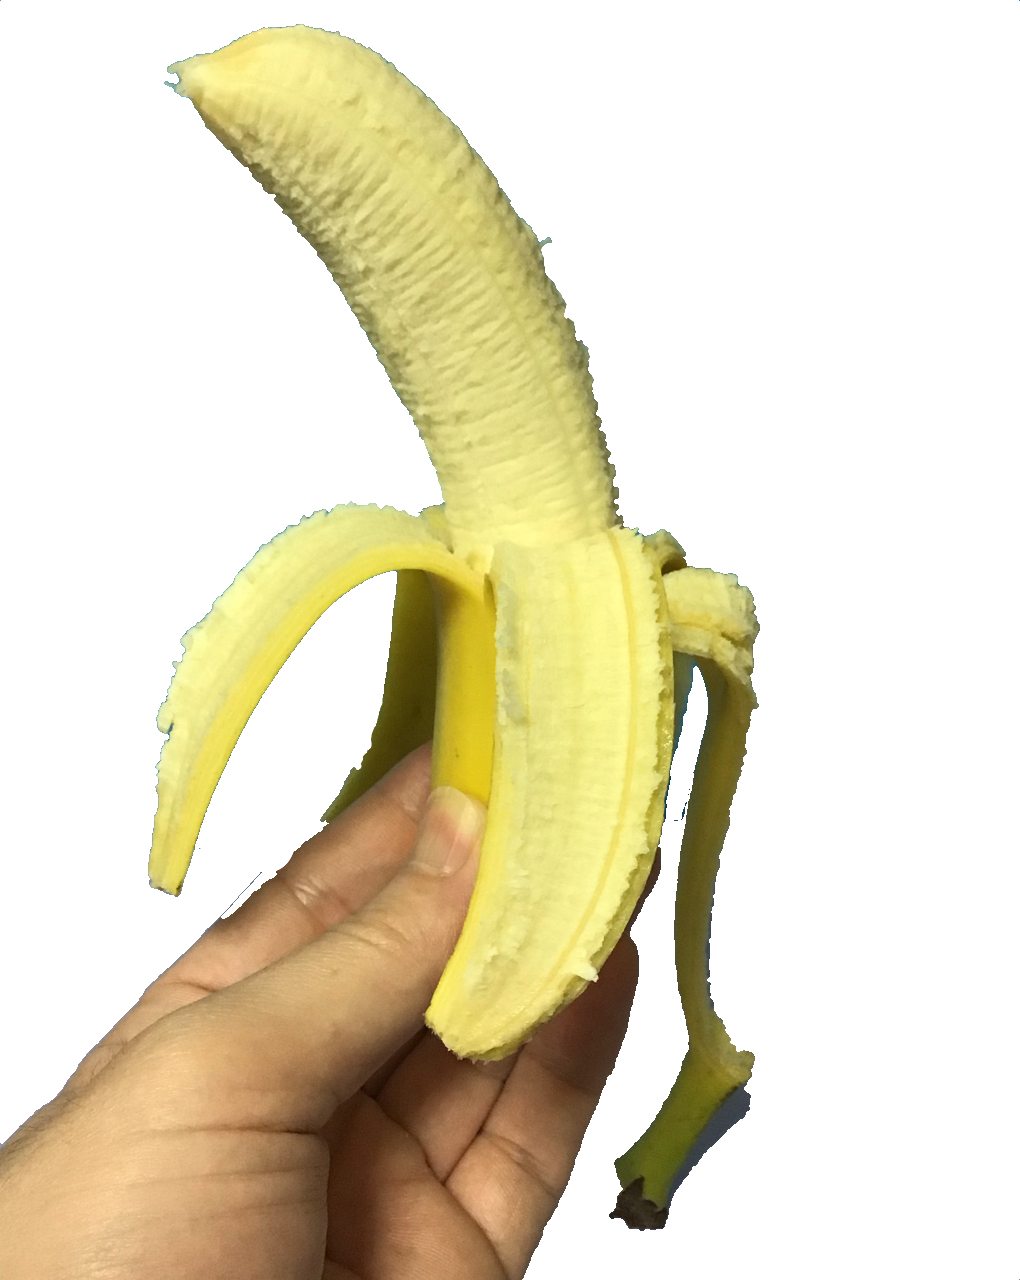 無料 会員登録なし 商用可素材 イラストr バナナをむいたフリー写真